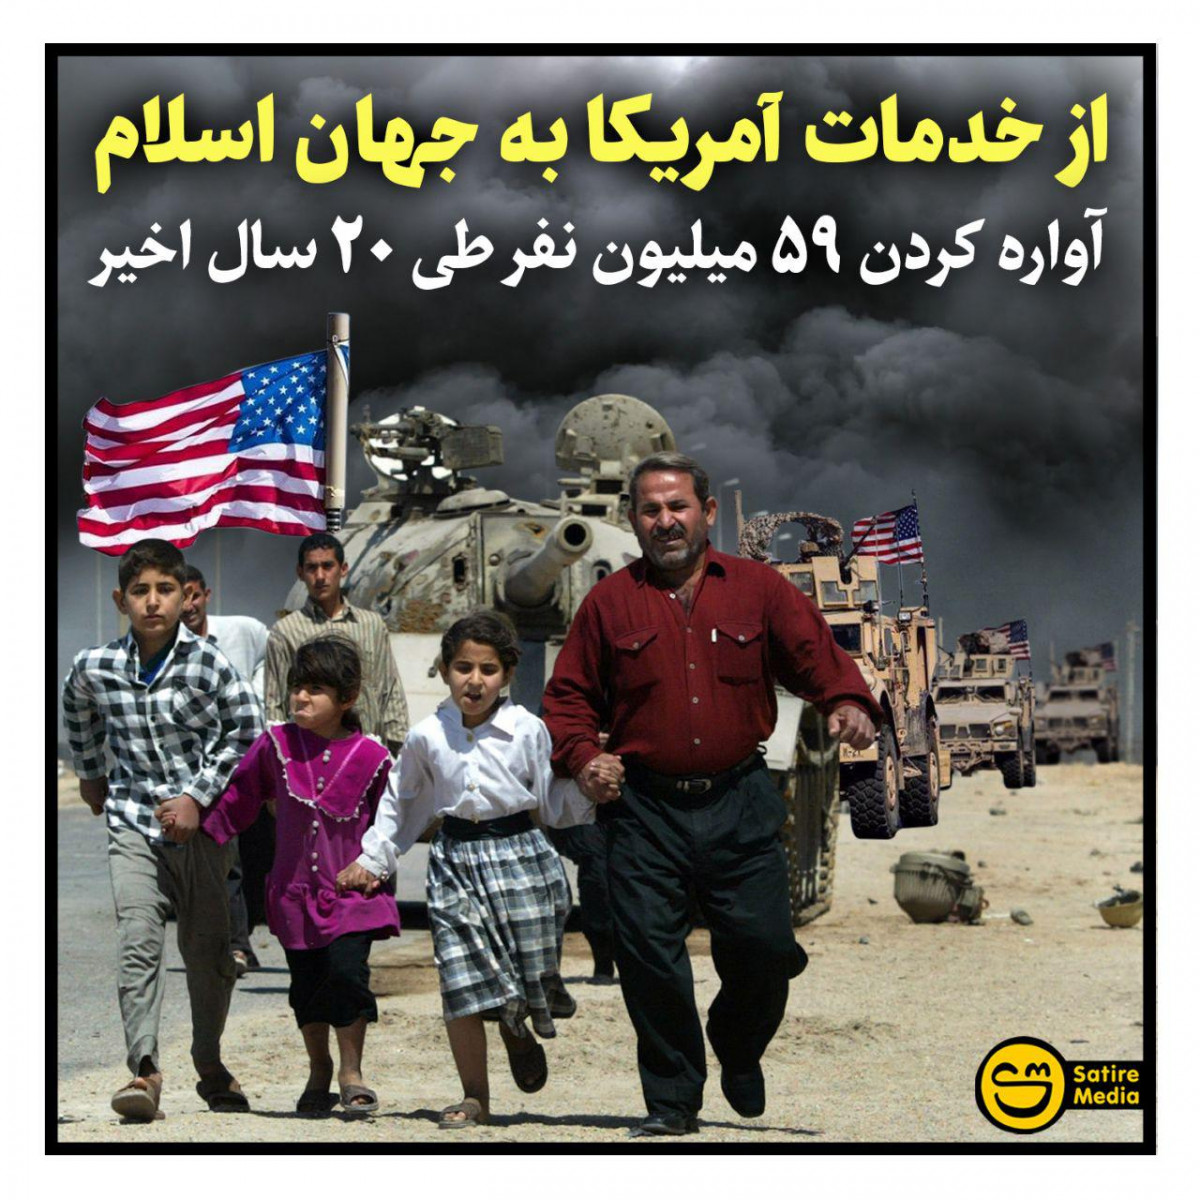 پوستر: از خدمات آمریکا به جهان اسلام